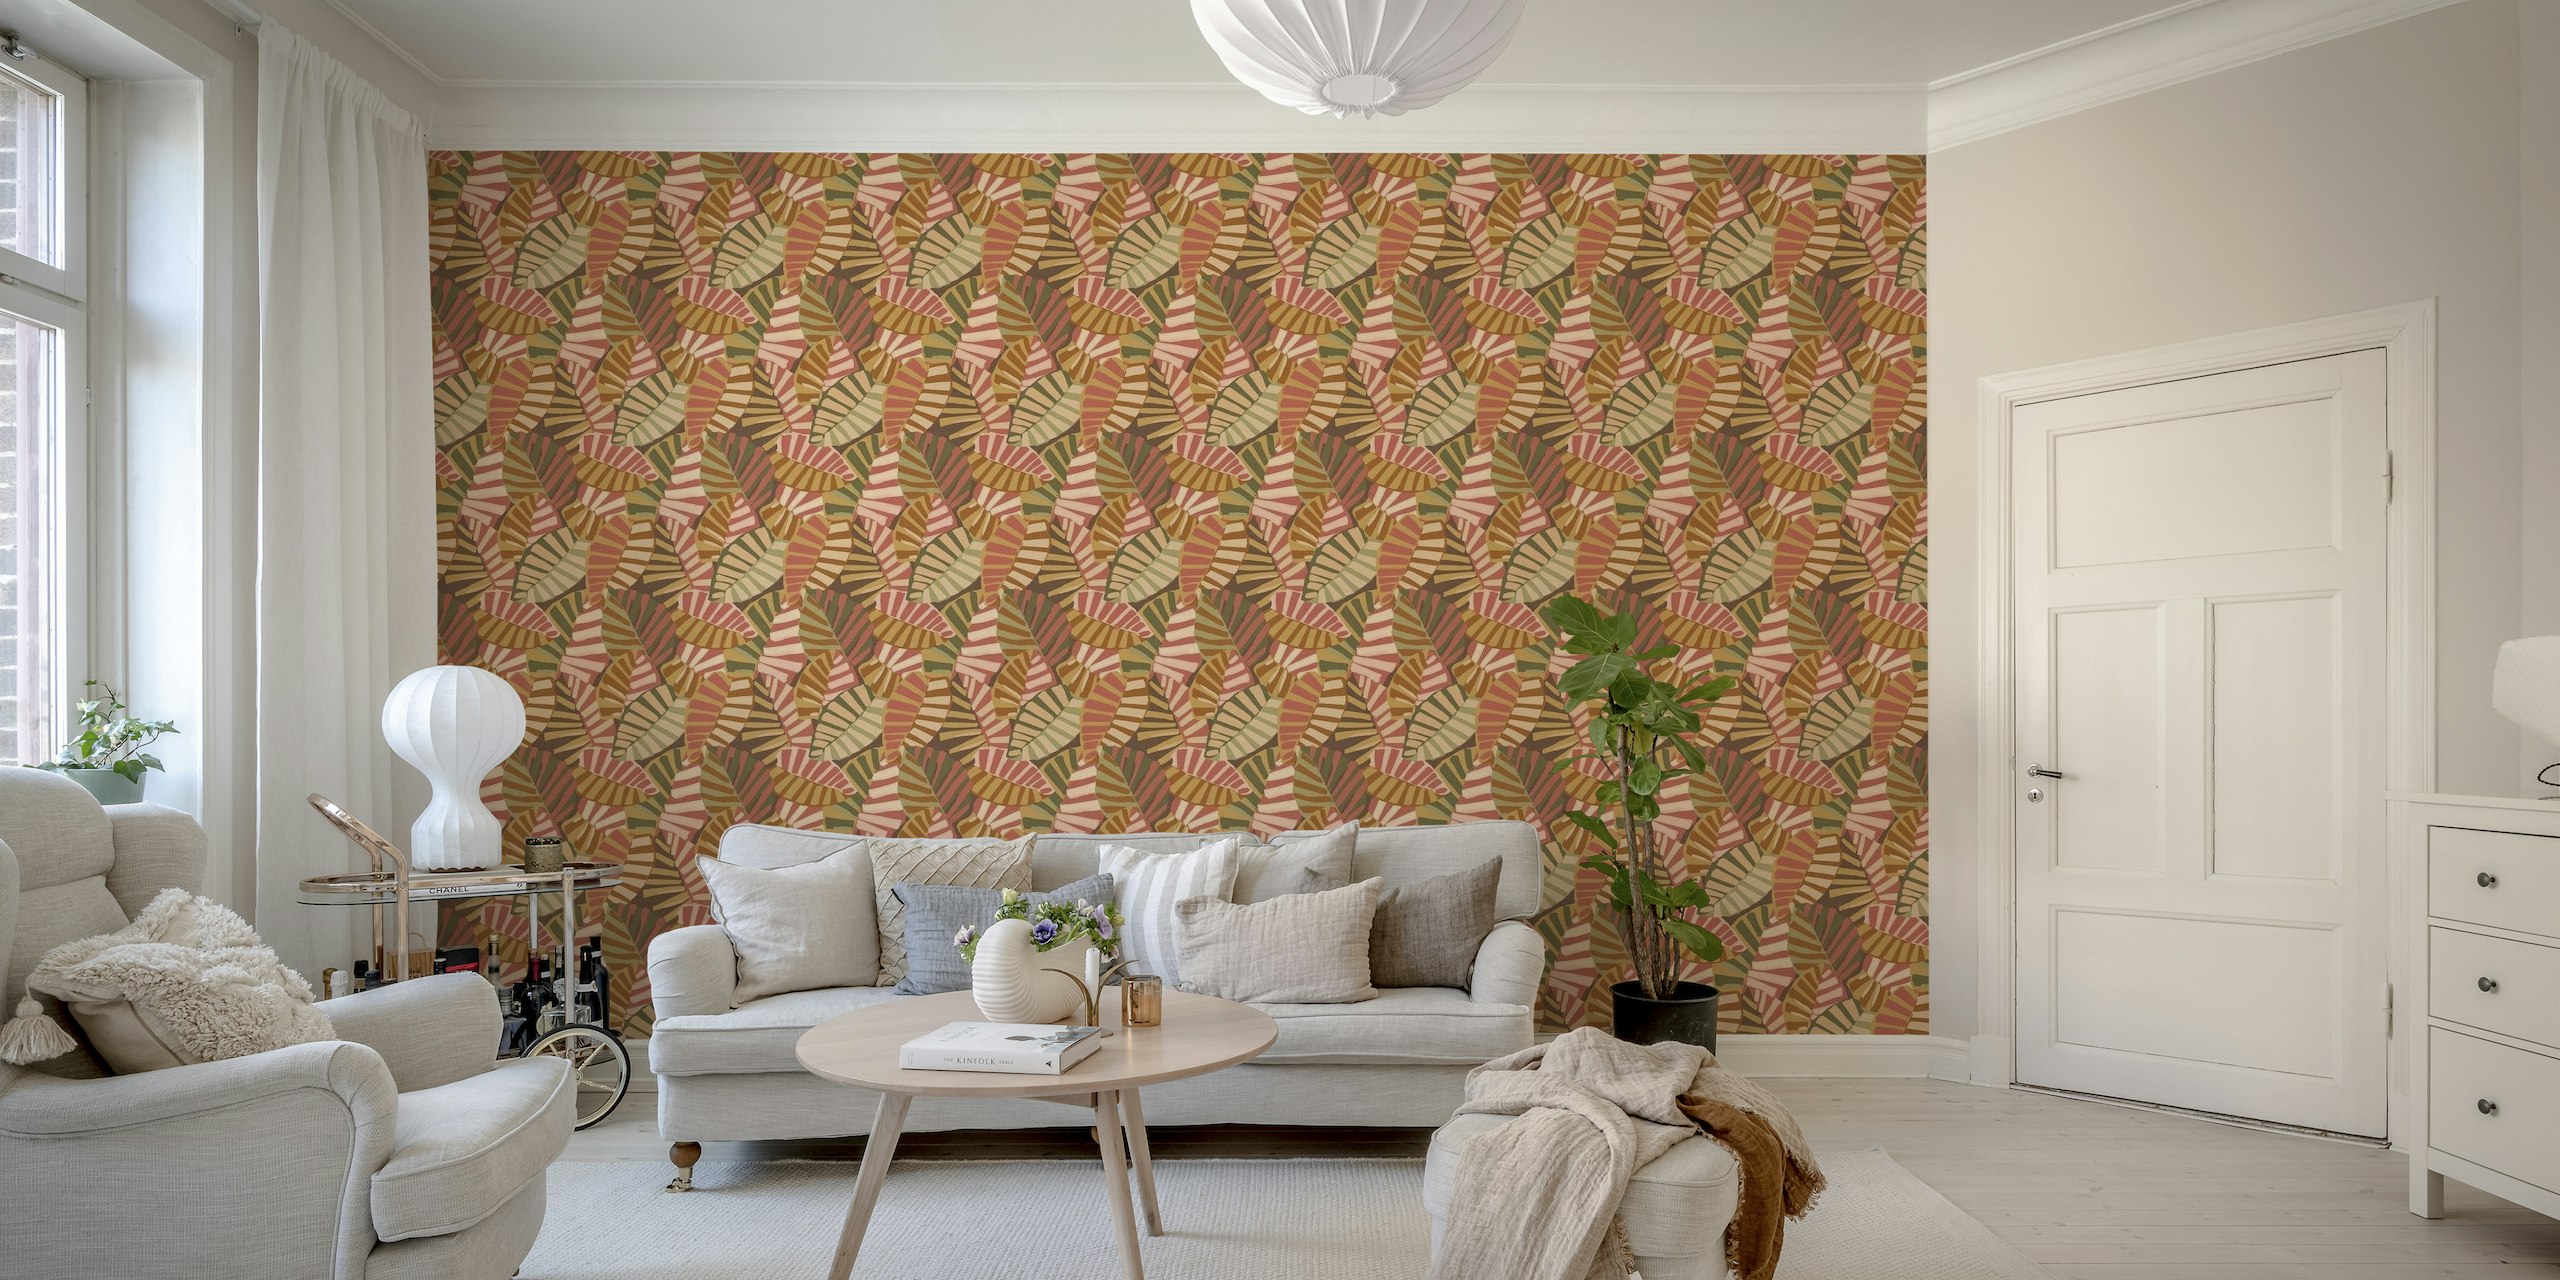 Fotomural vinílico de parede com padrão de folhagem em tons de terra com desenhos de folhas estilizadas